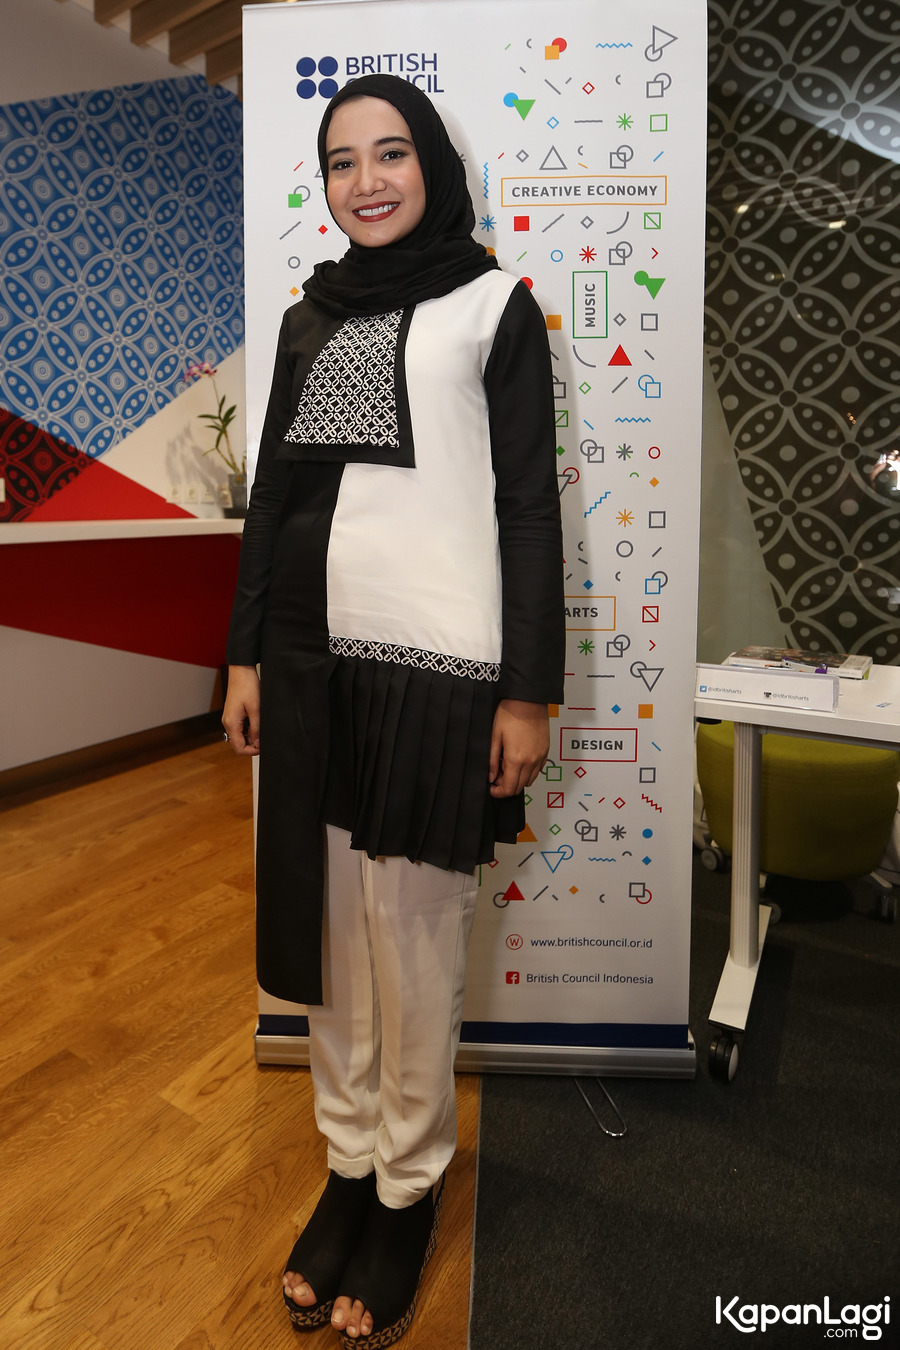  Zaskia  Sungkar  Tampilkan Busana Muslim di London Fashion 